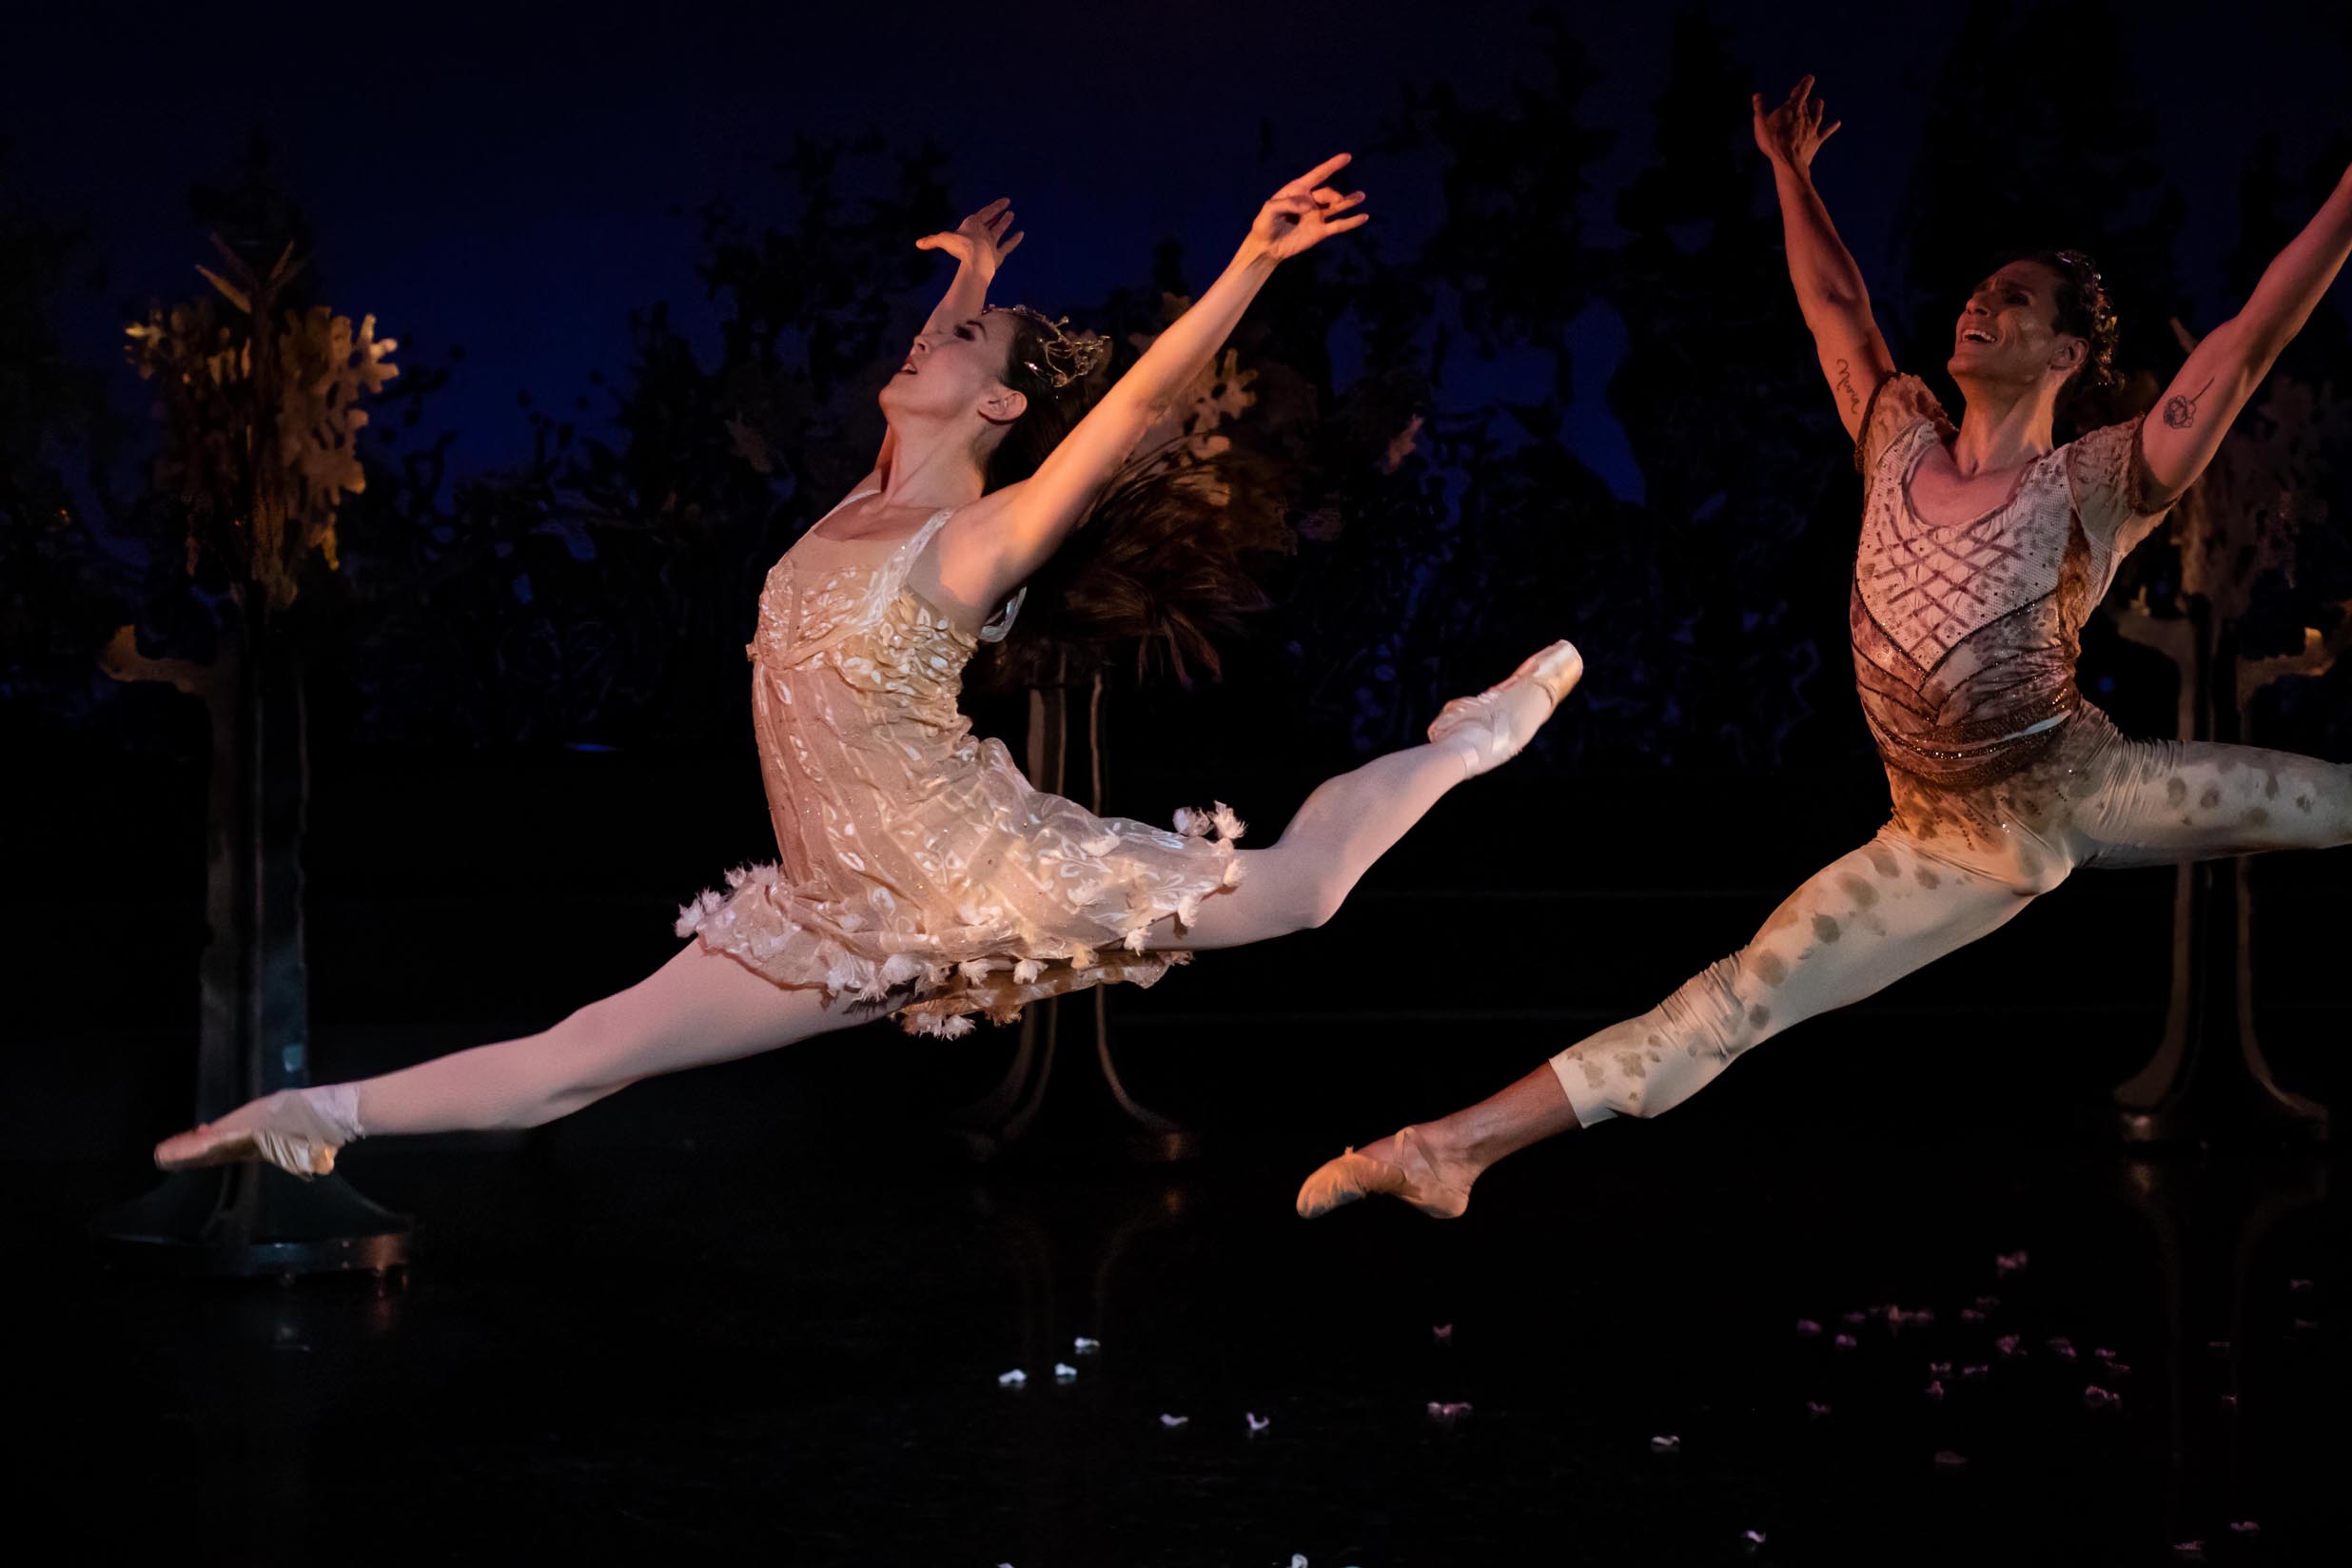 Grand Rapids Ballet's 'A Midsummer Night's Dream' is a joyful celebration of dance